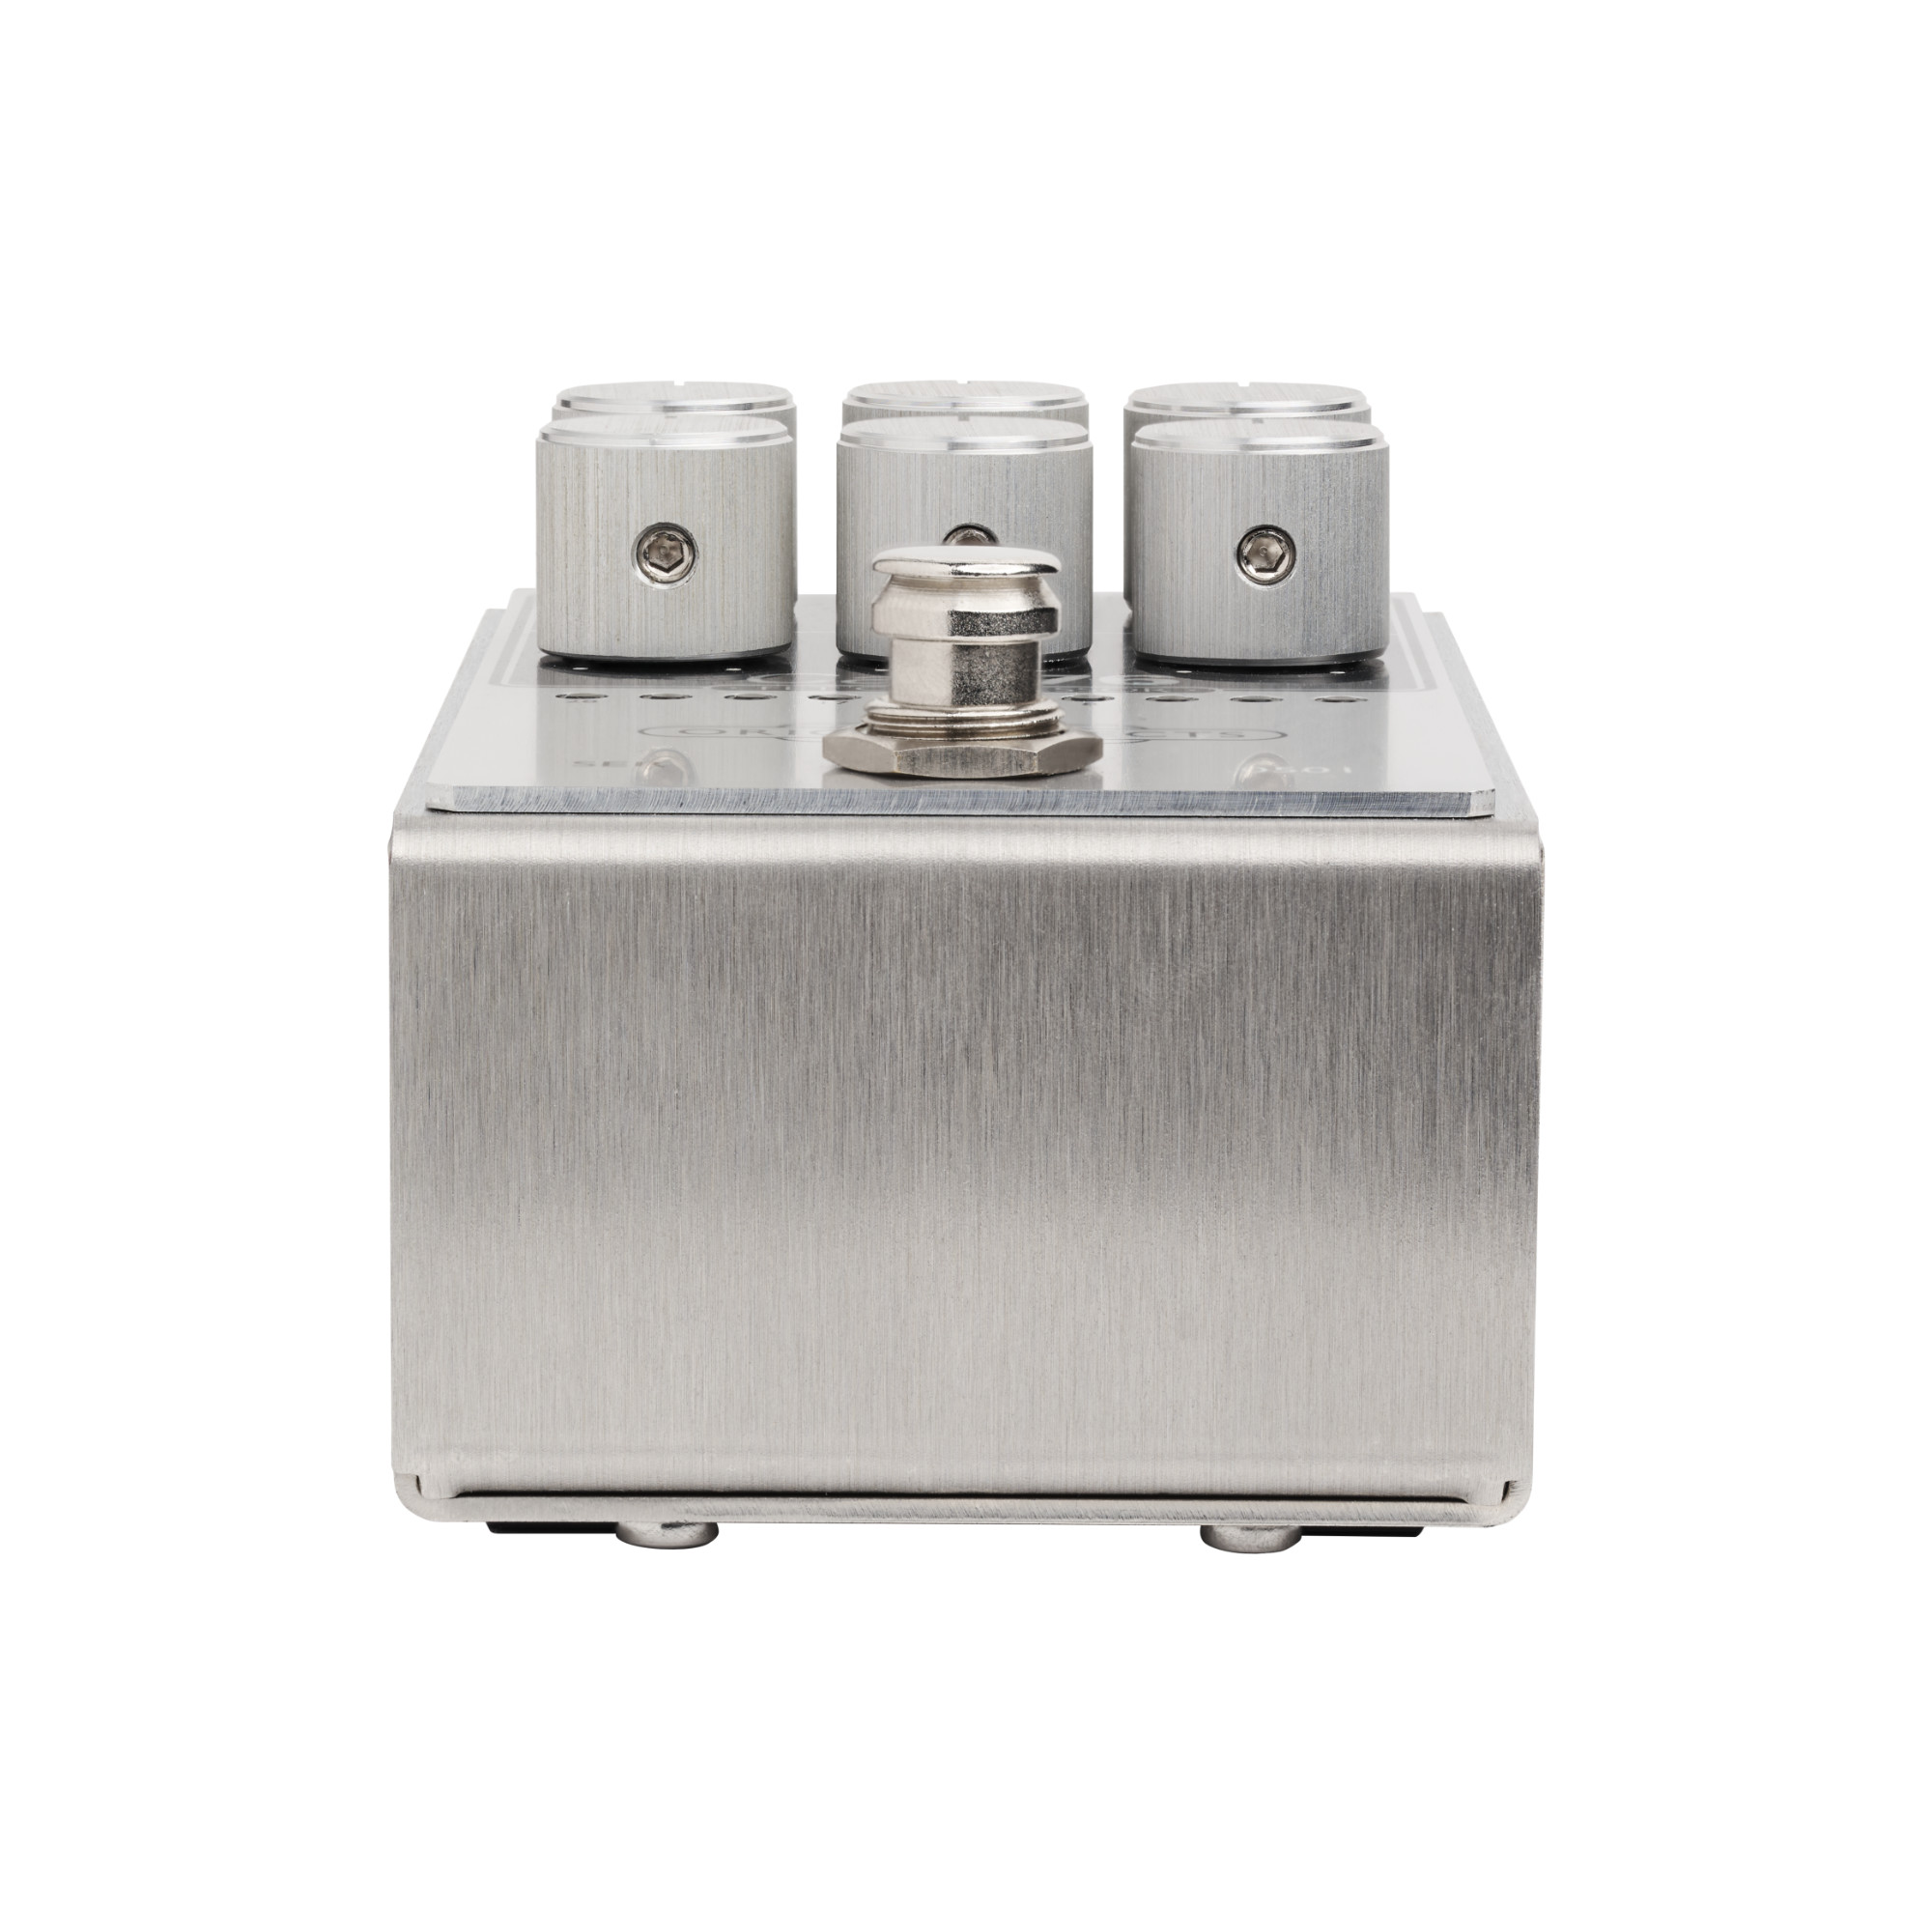 Origin Effects Cali76 Fet Compressor 2024 - Pedal compresor / sustain / noise gate - Variation 3